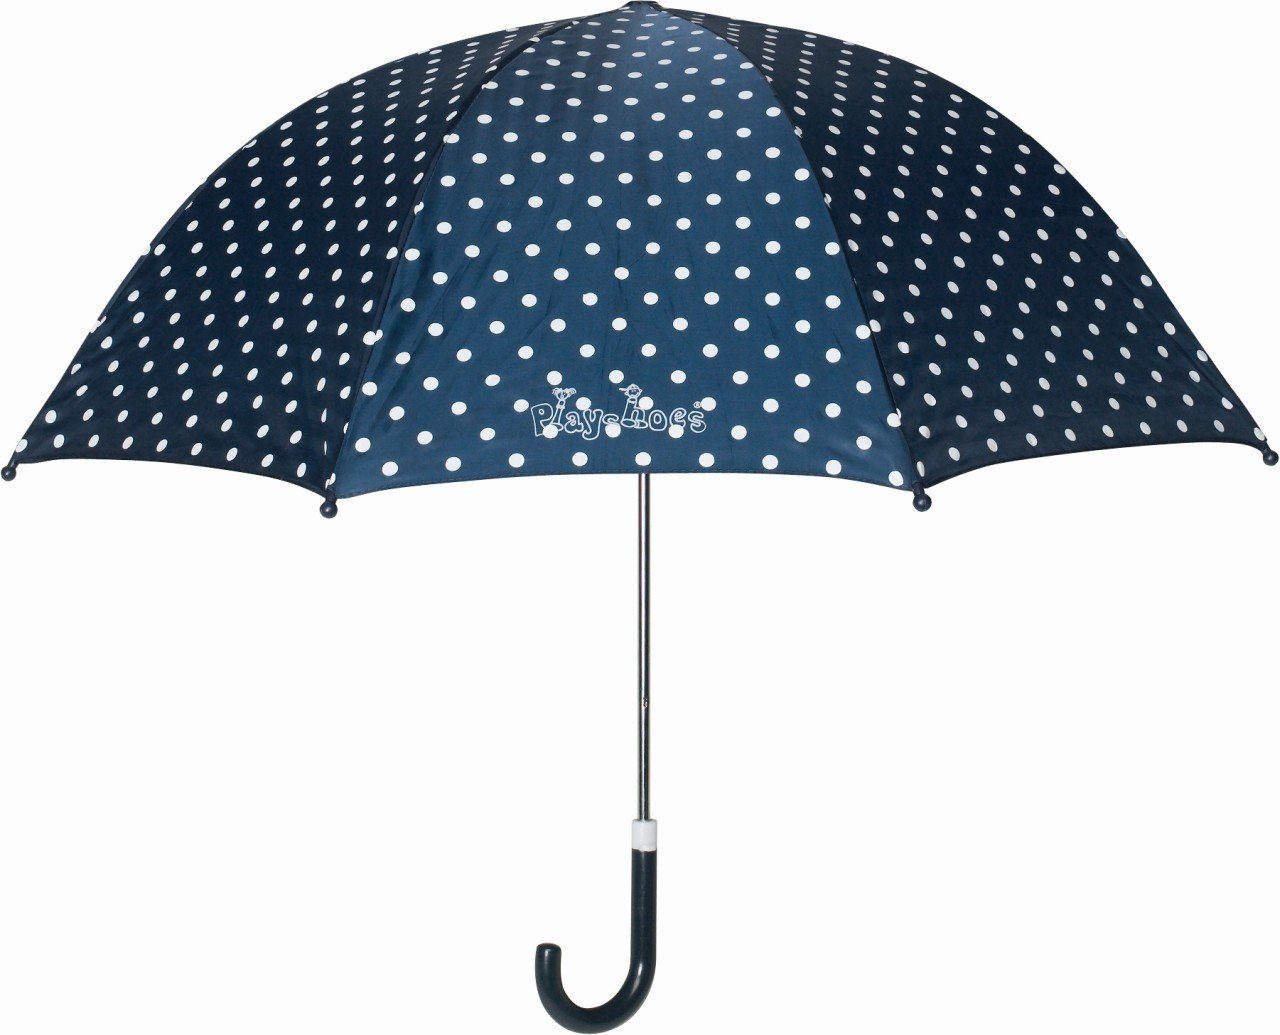 Playshoes Punkte Blau Stockregenschirm Regenschirm